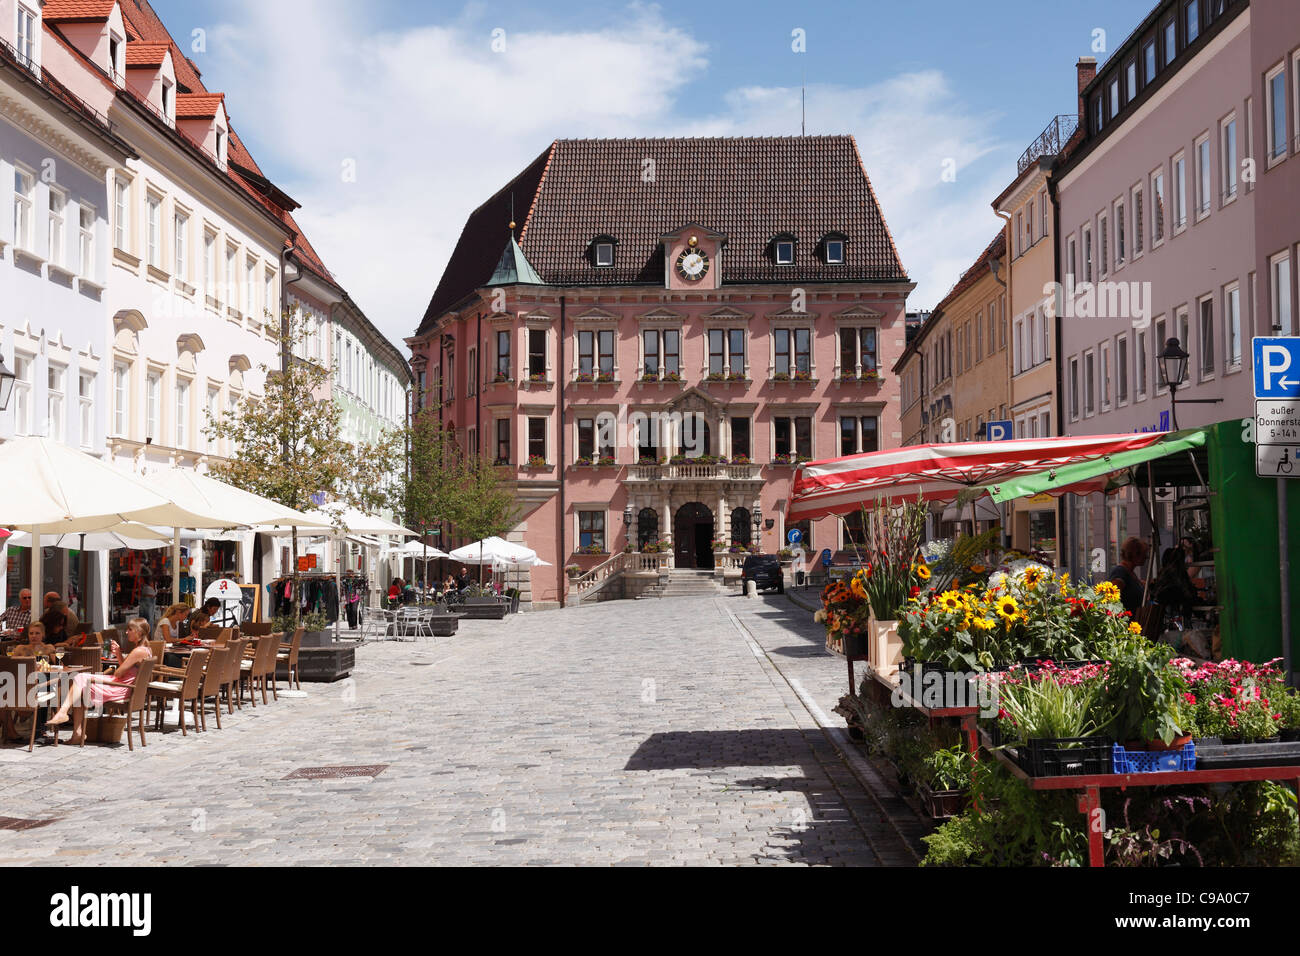 Alemania, Baviera, suabia, Kaufbeuren, Vista del ayuntamiento de la ciudad con restaurante y tienda de flores Foto de stock